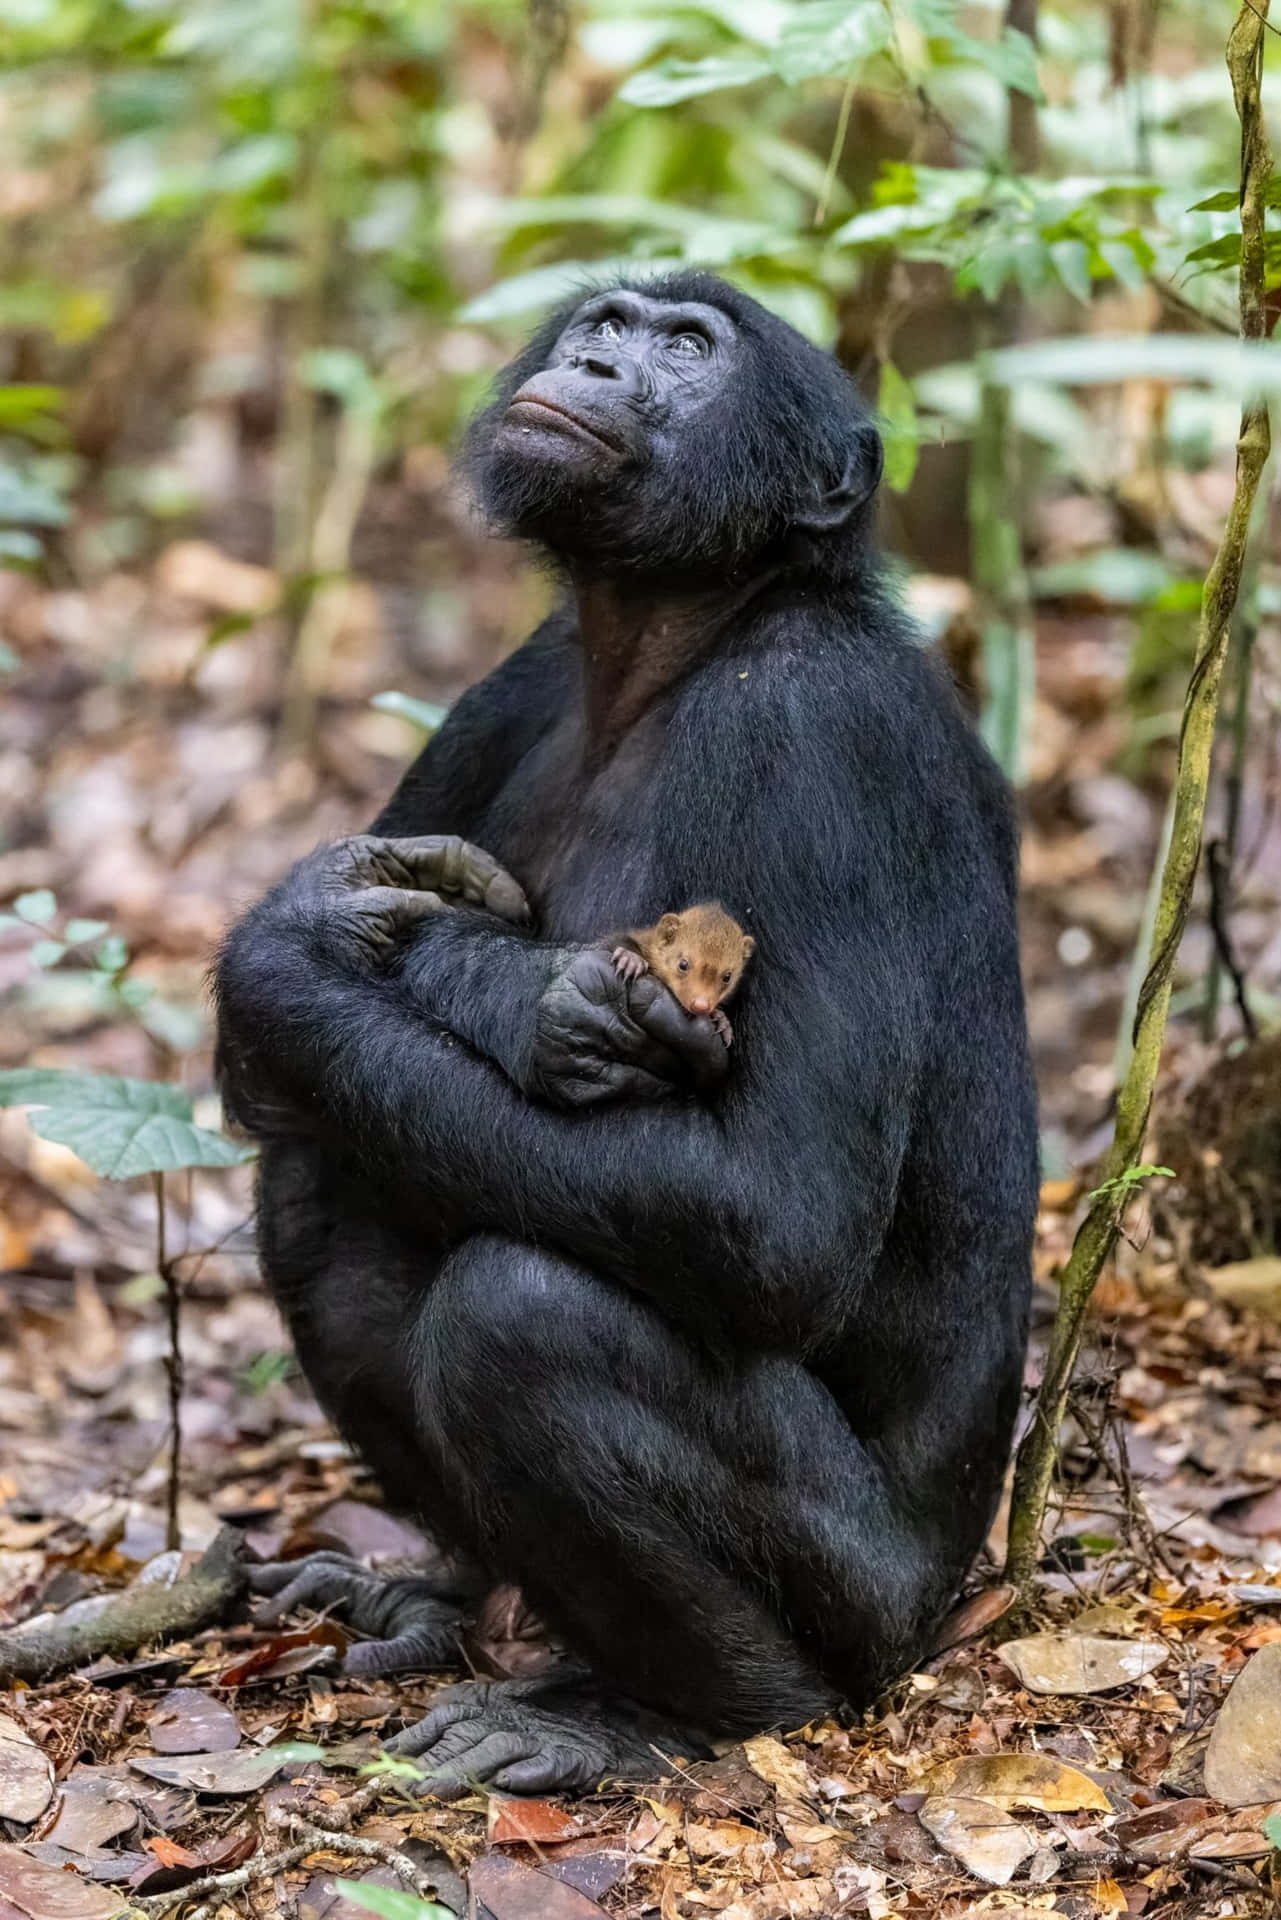 Imagende Un Mono Sentado Con Su Bebé